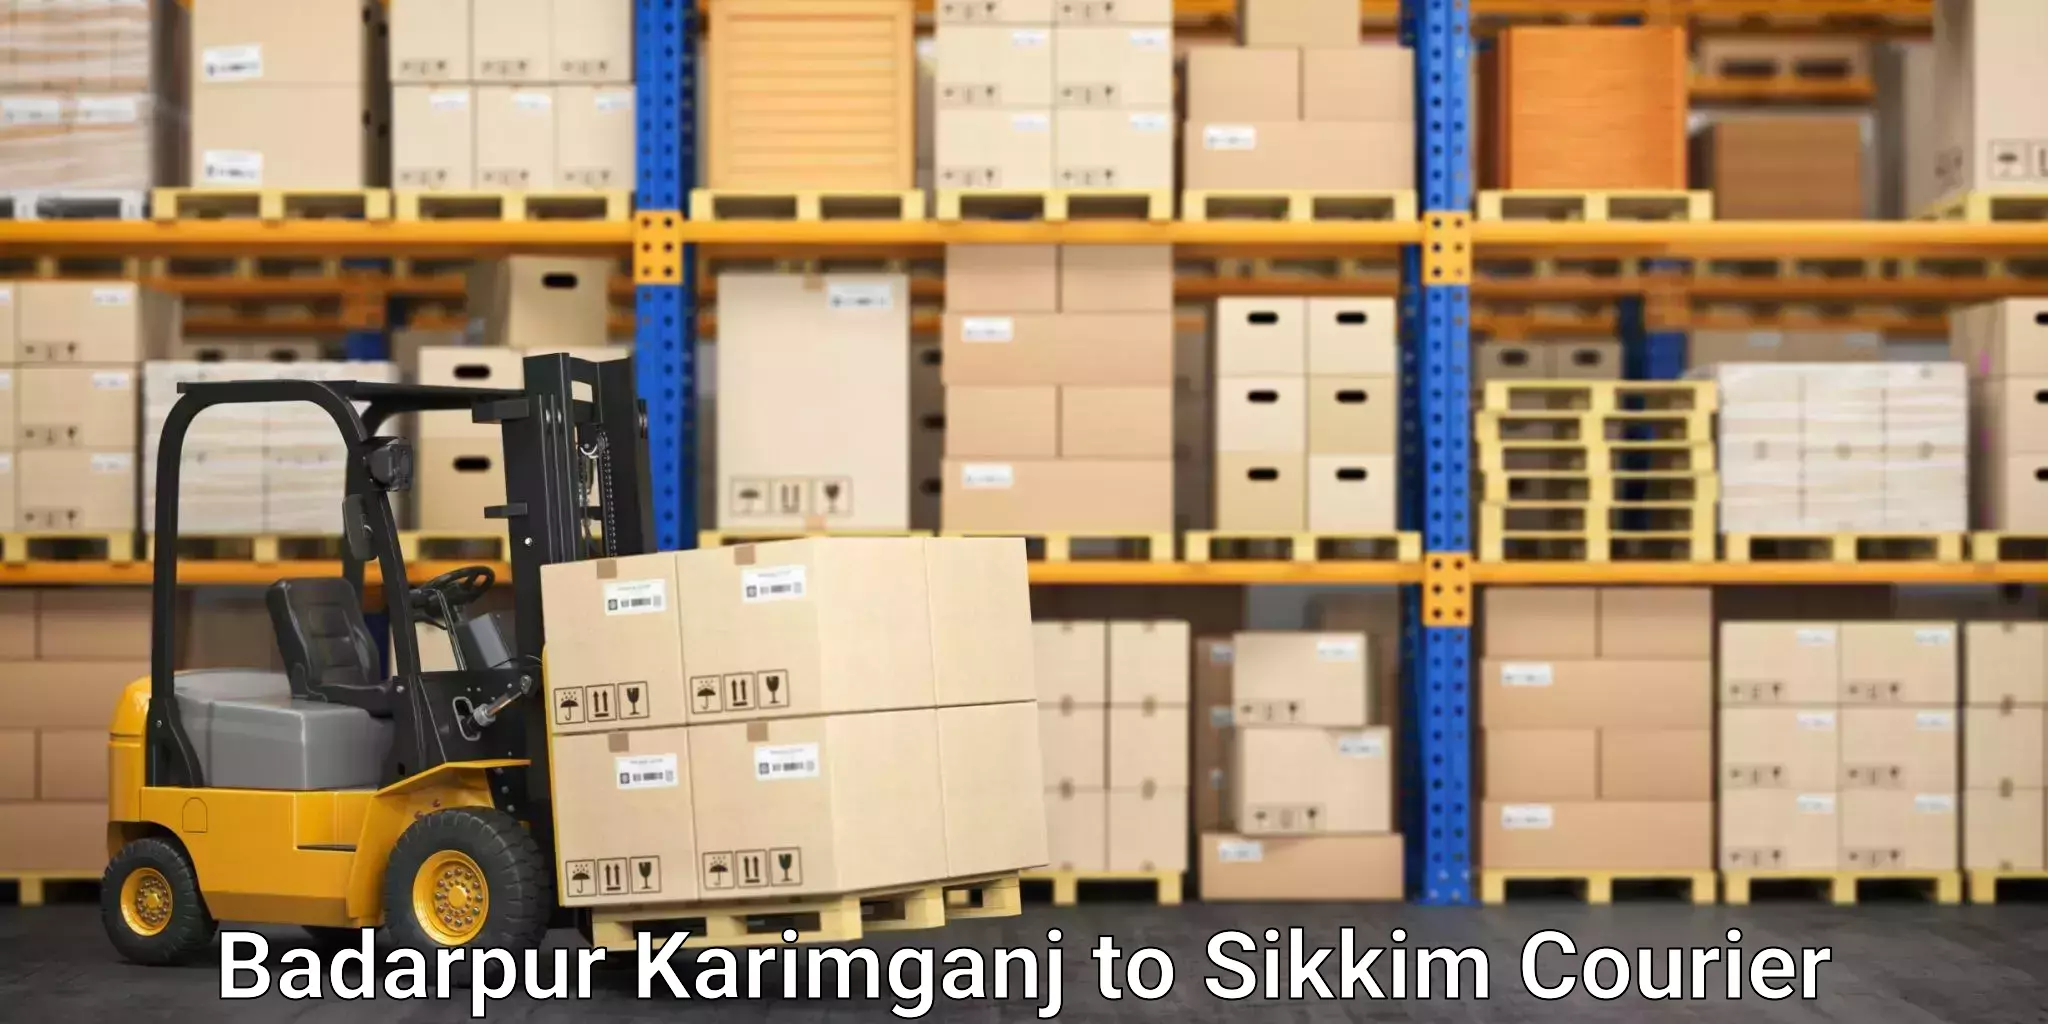 24-hour courier services Badarpur Karimganj to Singtam